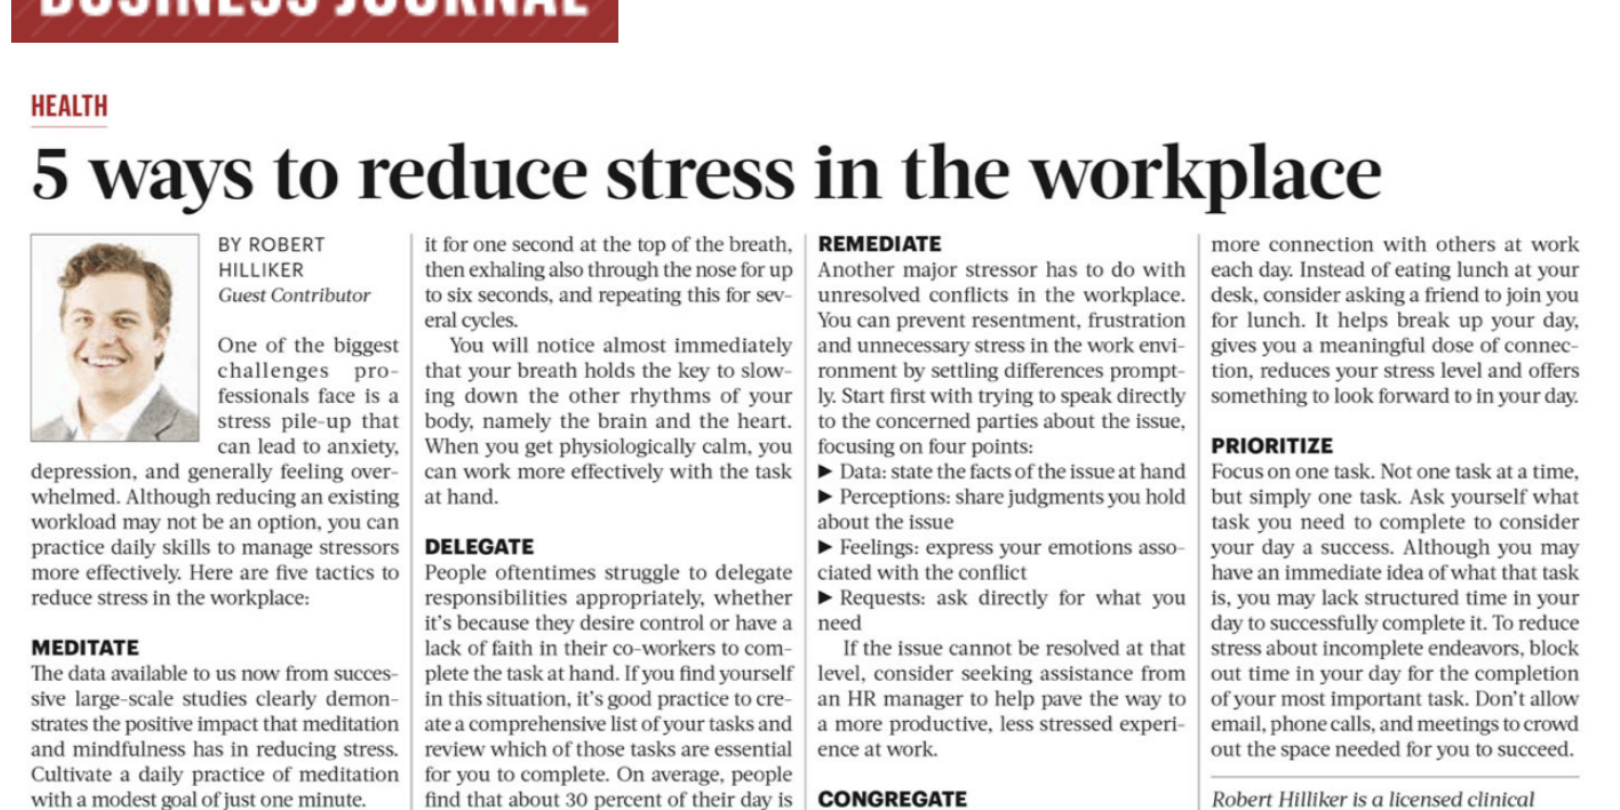 5 Ways to Reduce Stress